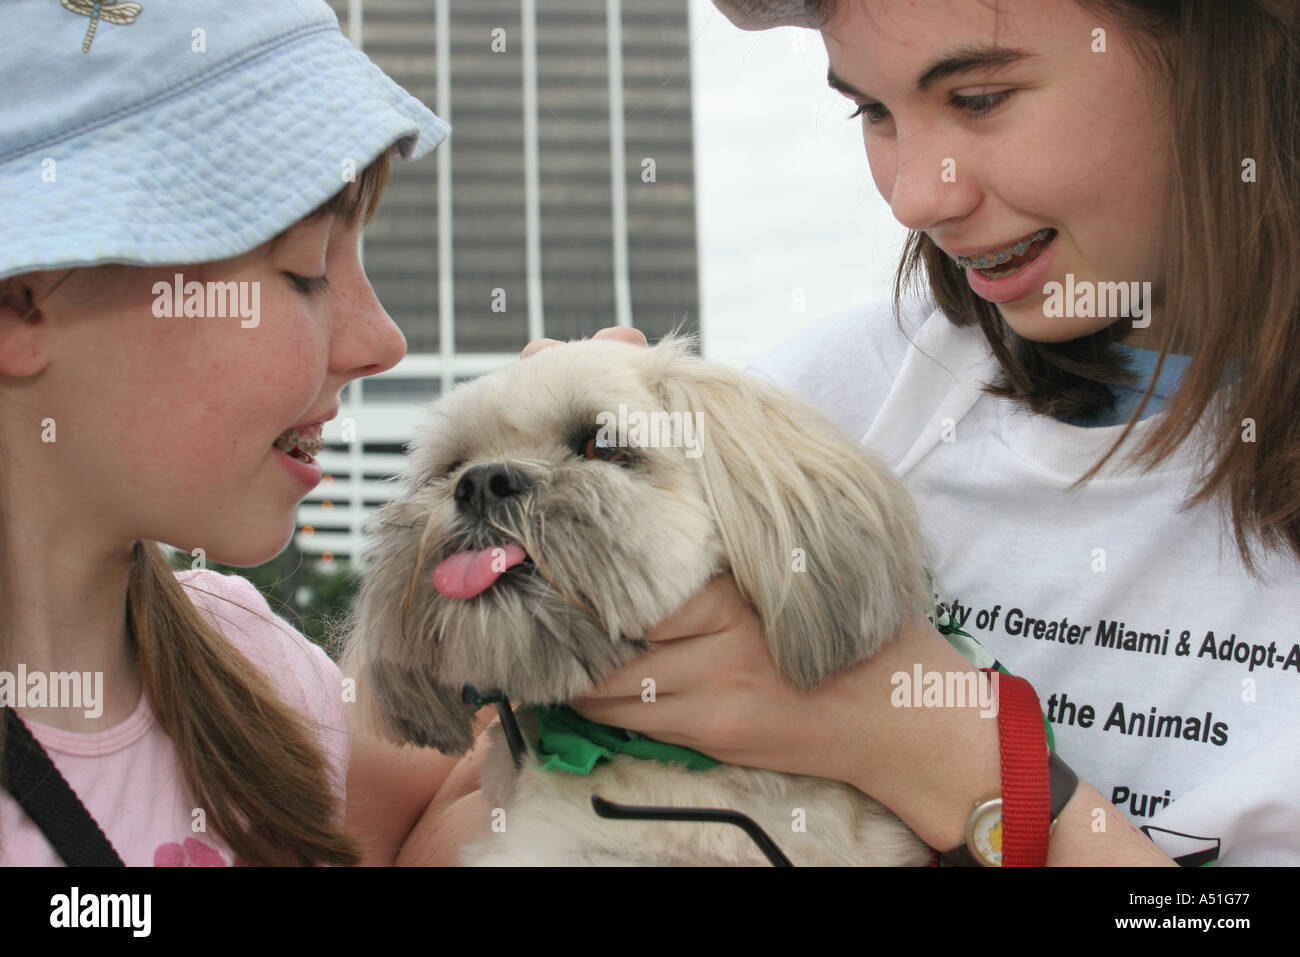 Miami Florida, Bayfront Park, passeggiata per gli animali, evento della società umana, cani da cane, animali da compagnia, canine, animali, sorelle, volontariato volontariato servizio comunità v Foto Stock